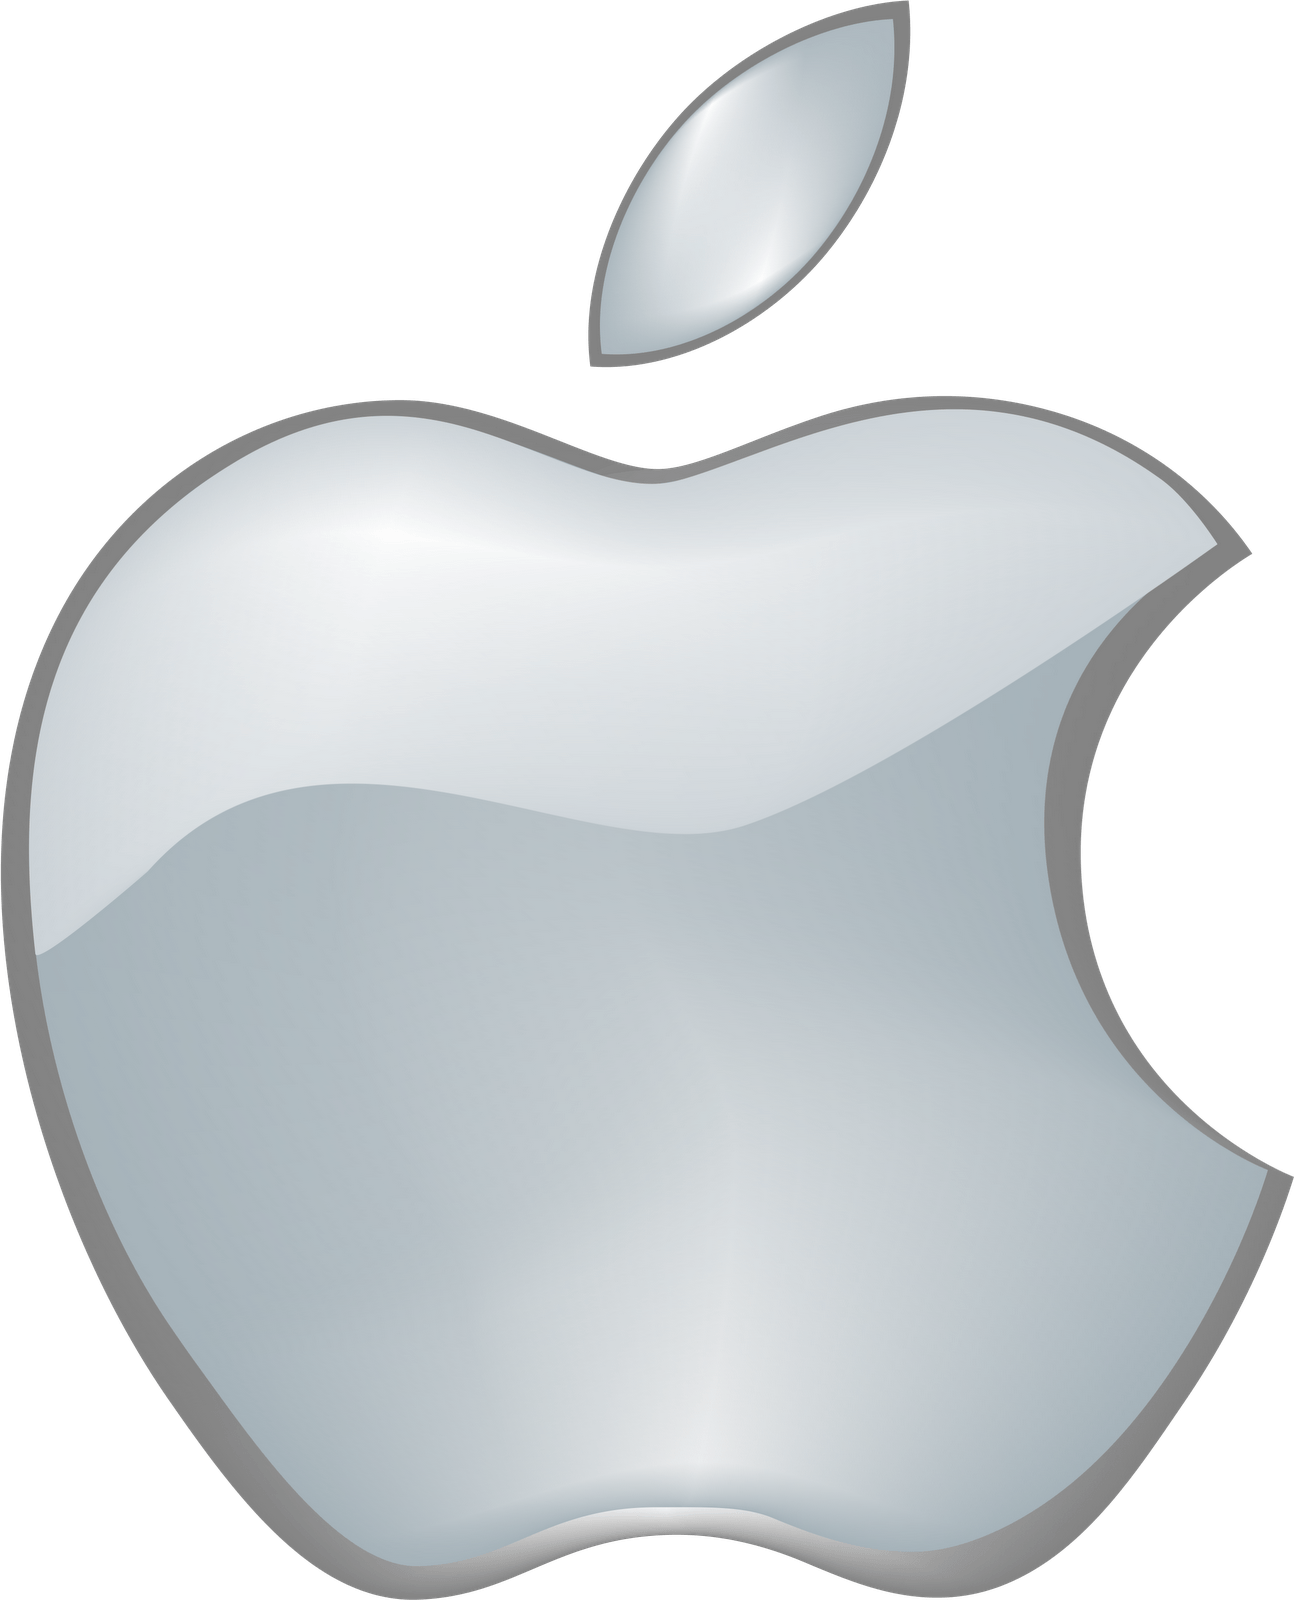 2015 Apple Logo - Assignment One: Logos – cmm312 fall 2015